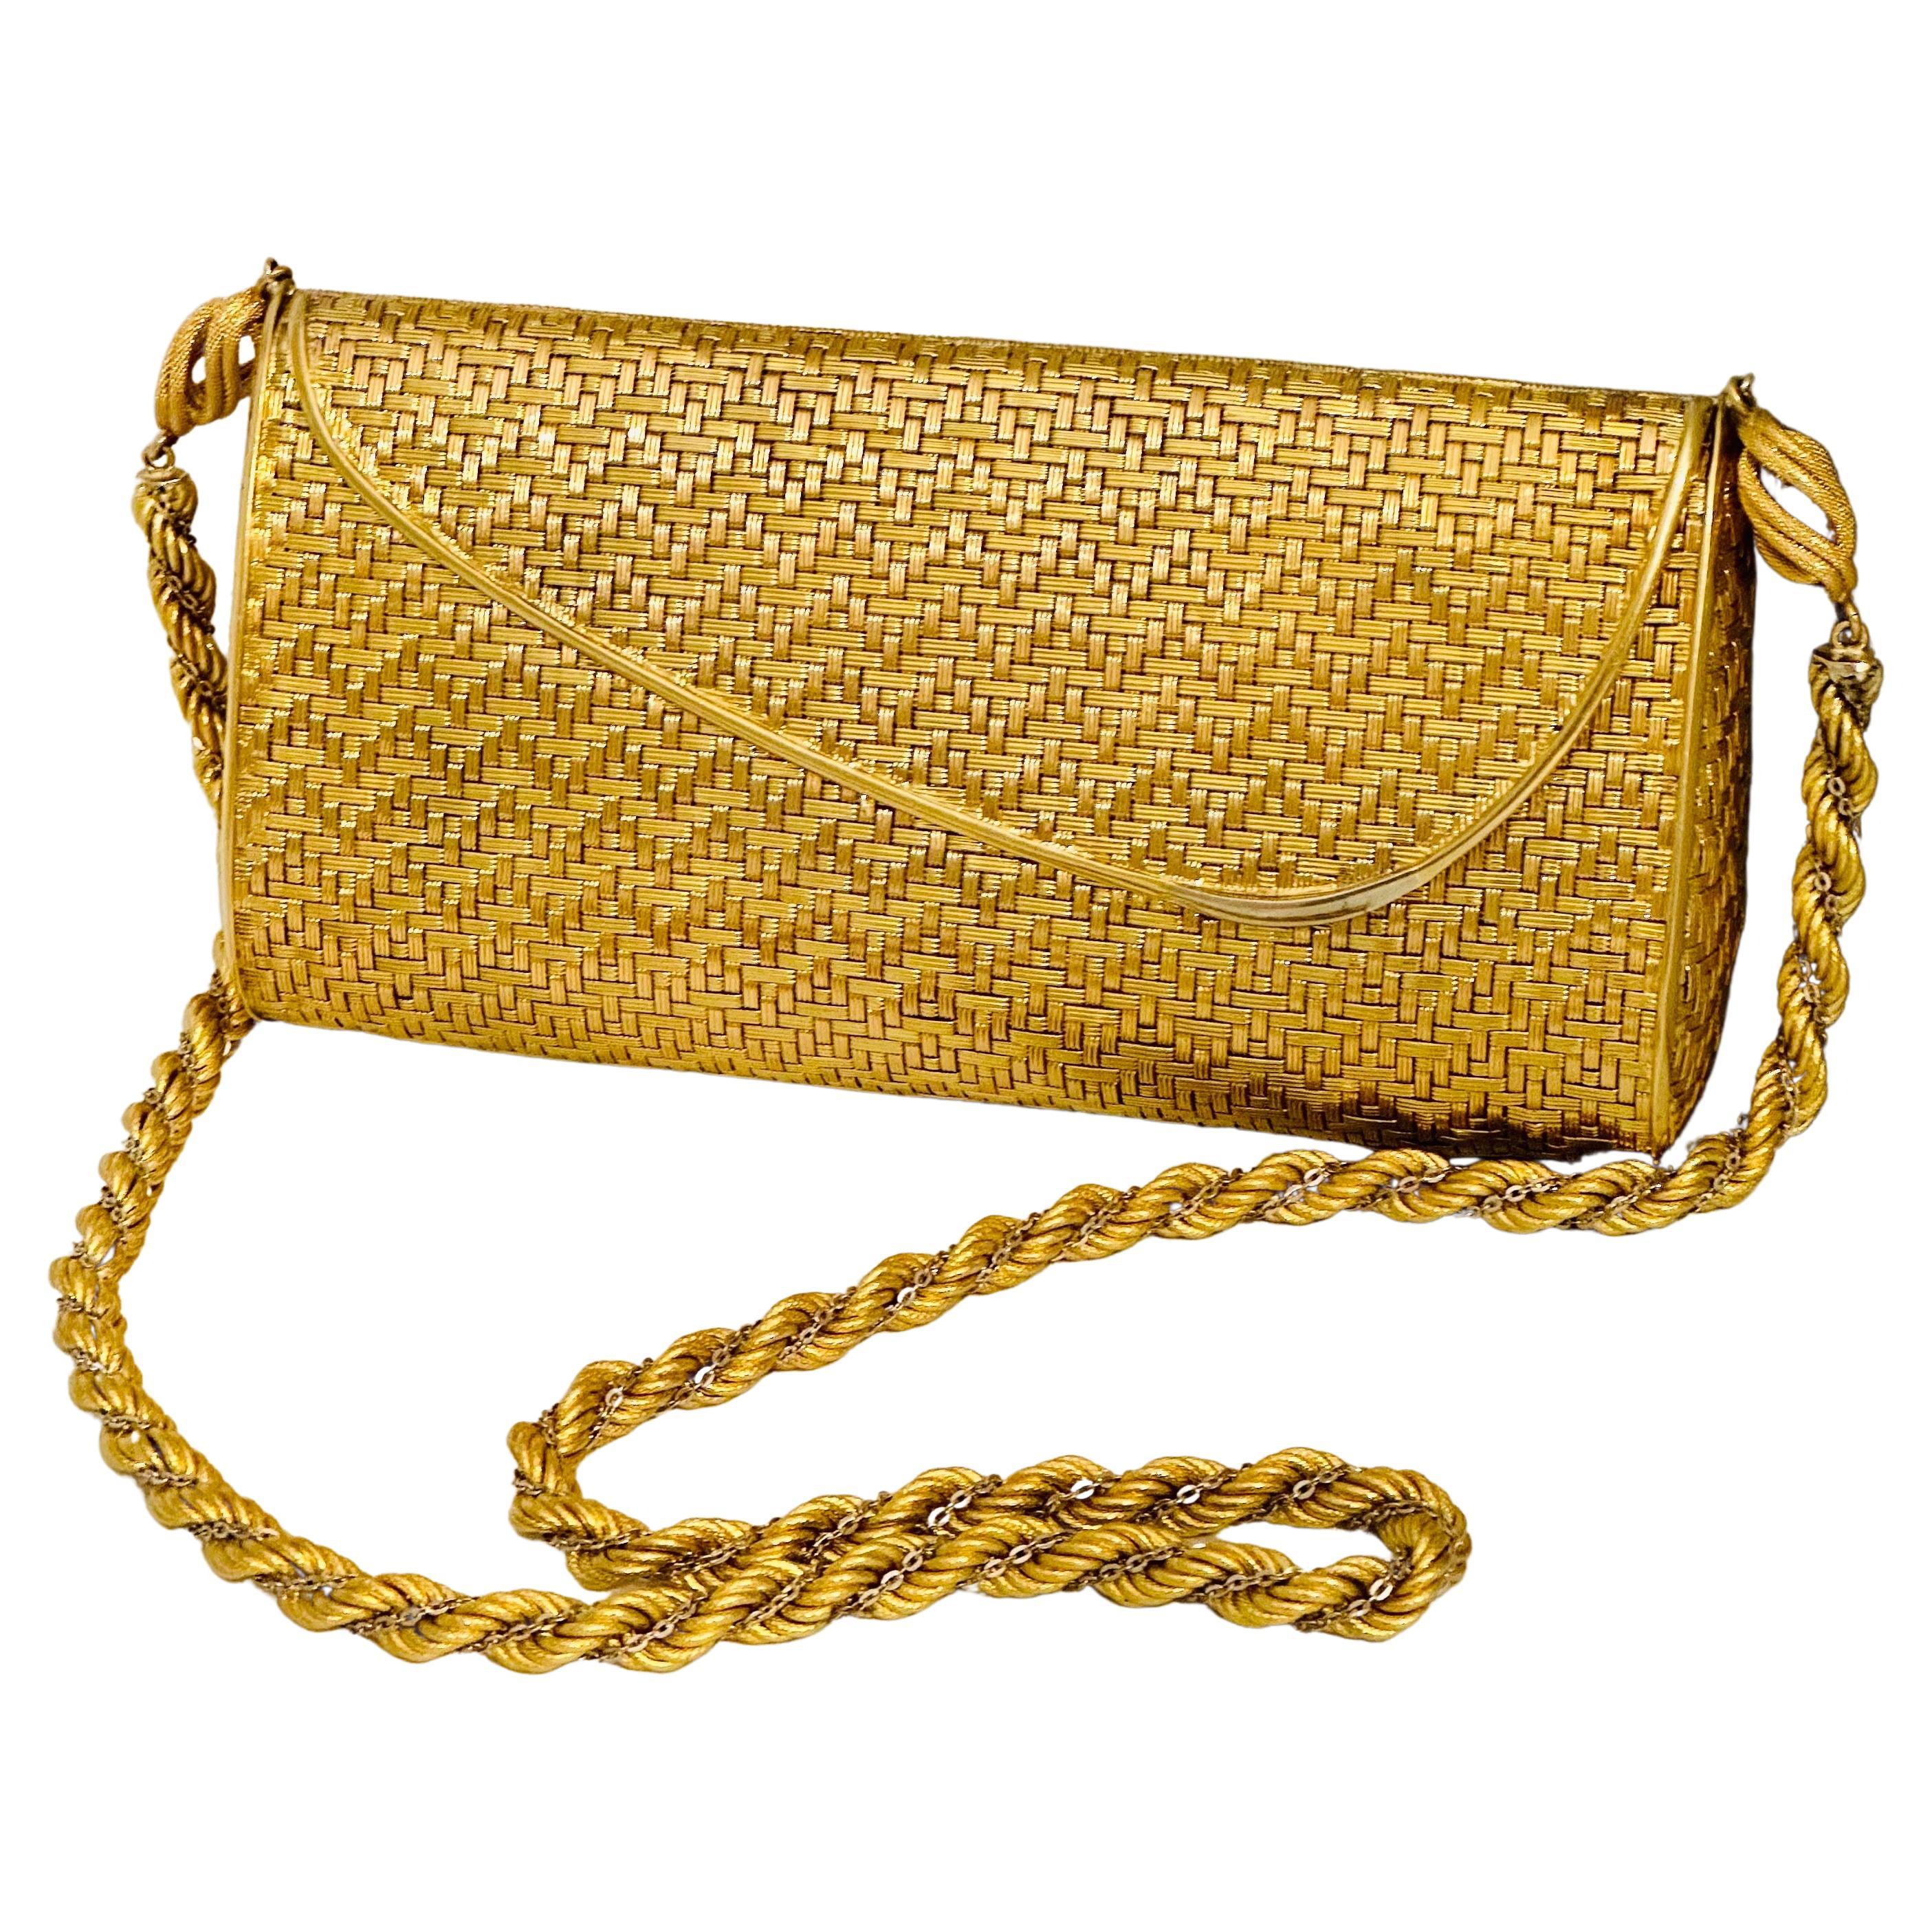 Cartier - Sac à main en maille or jaune 18 carats avec chaîne à l'épaule - Rare - 401 Gm